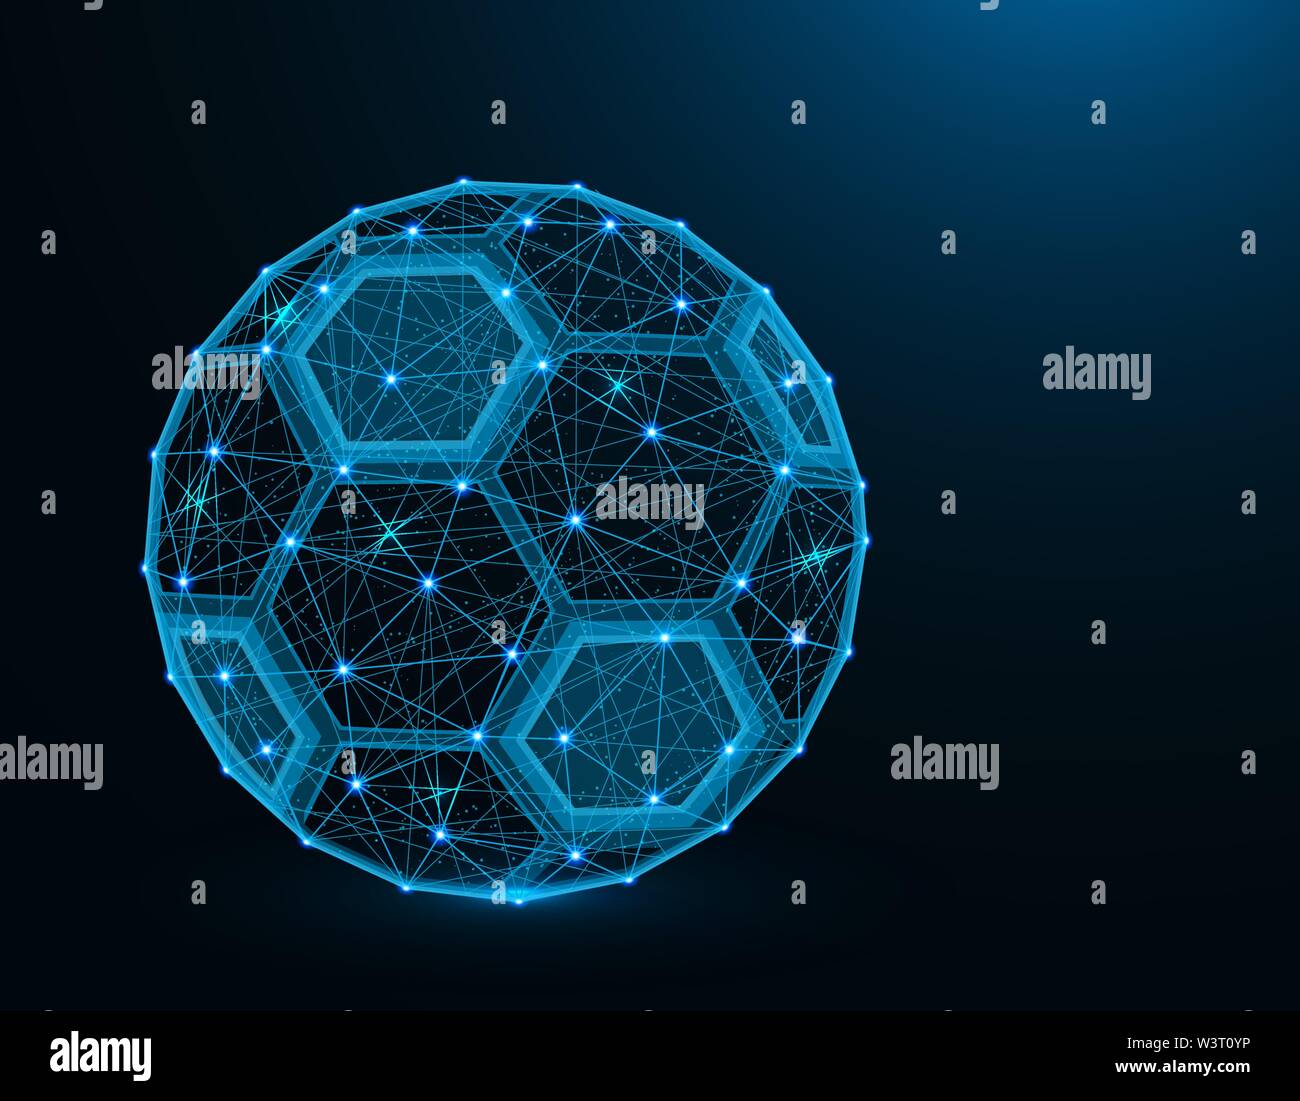 Pallone da calcio basso poli modello, gioco di sport grafica astratta, calcio wireframe poligonale illustrazione vettoriale su sfondo blu scuro Illustrazione Vettoriale